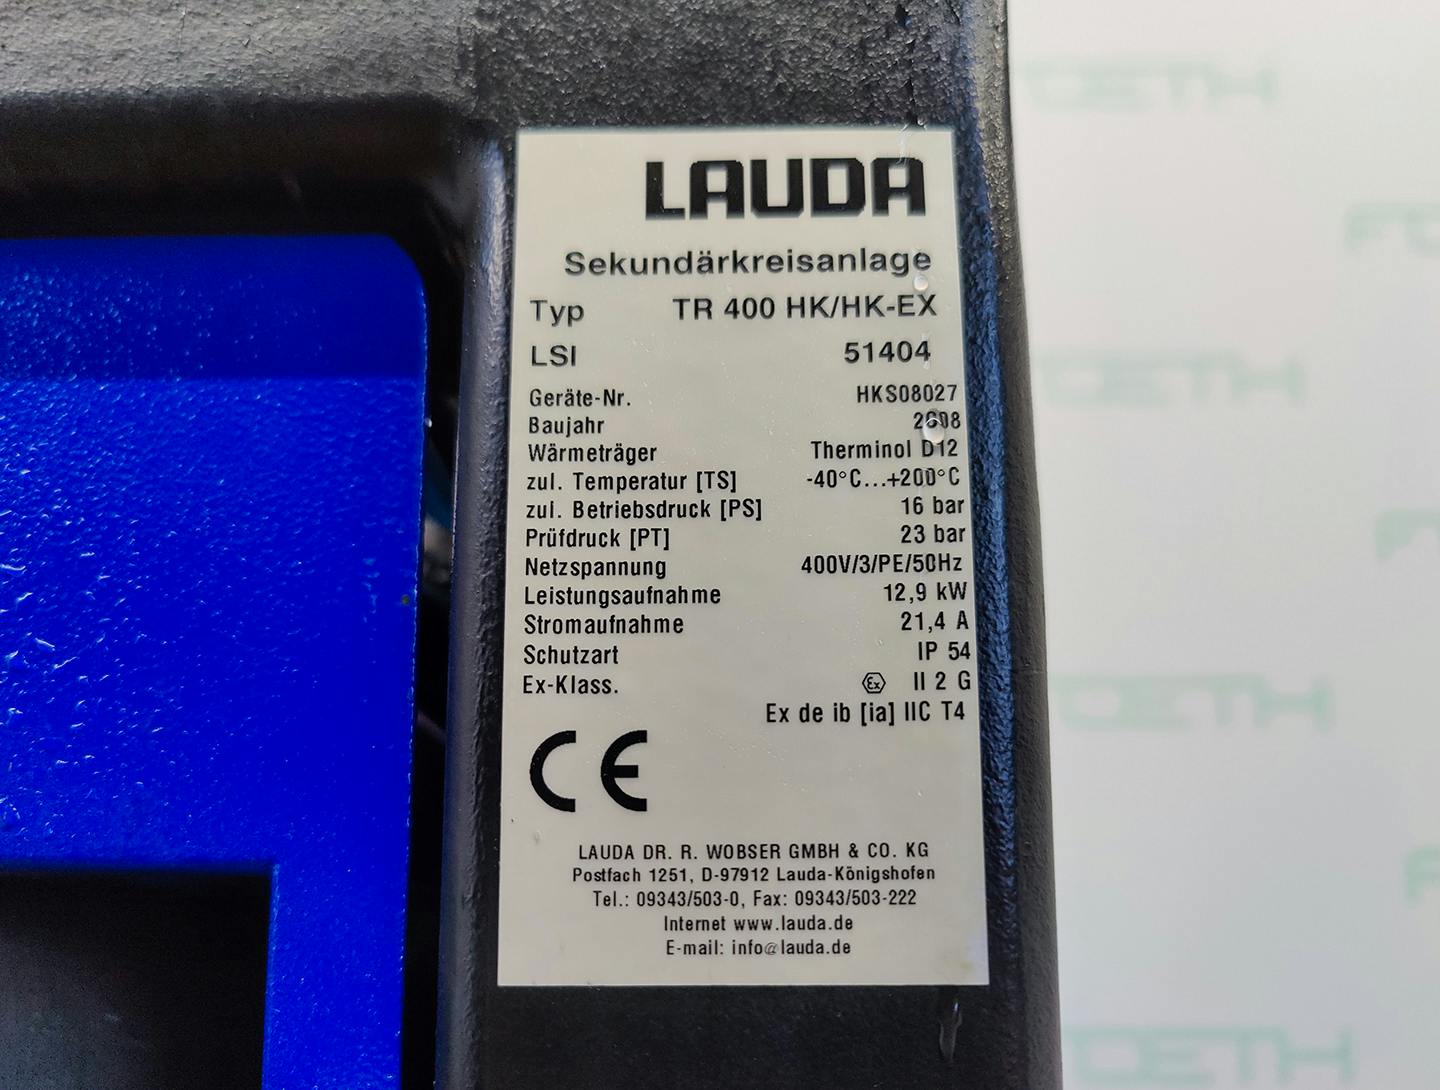 Lauda TR400 HK/HK-EX "secondary circuit system" - Temperature control unit - image 6